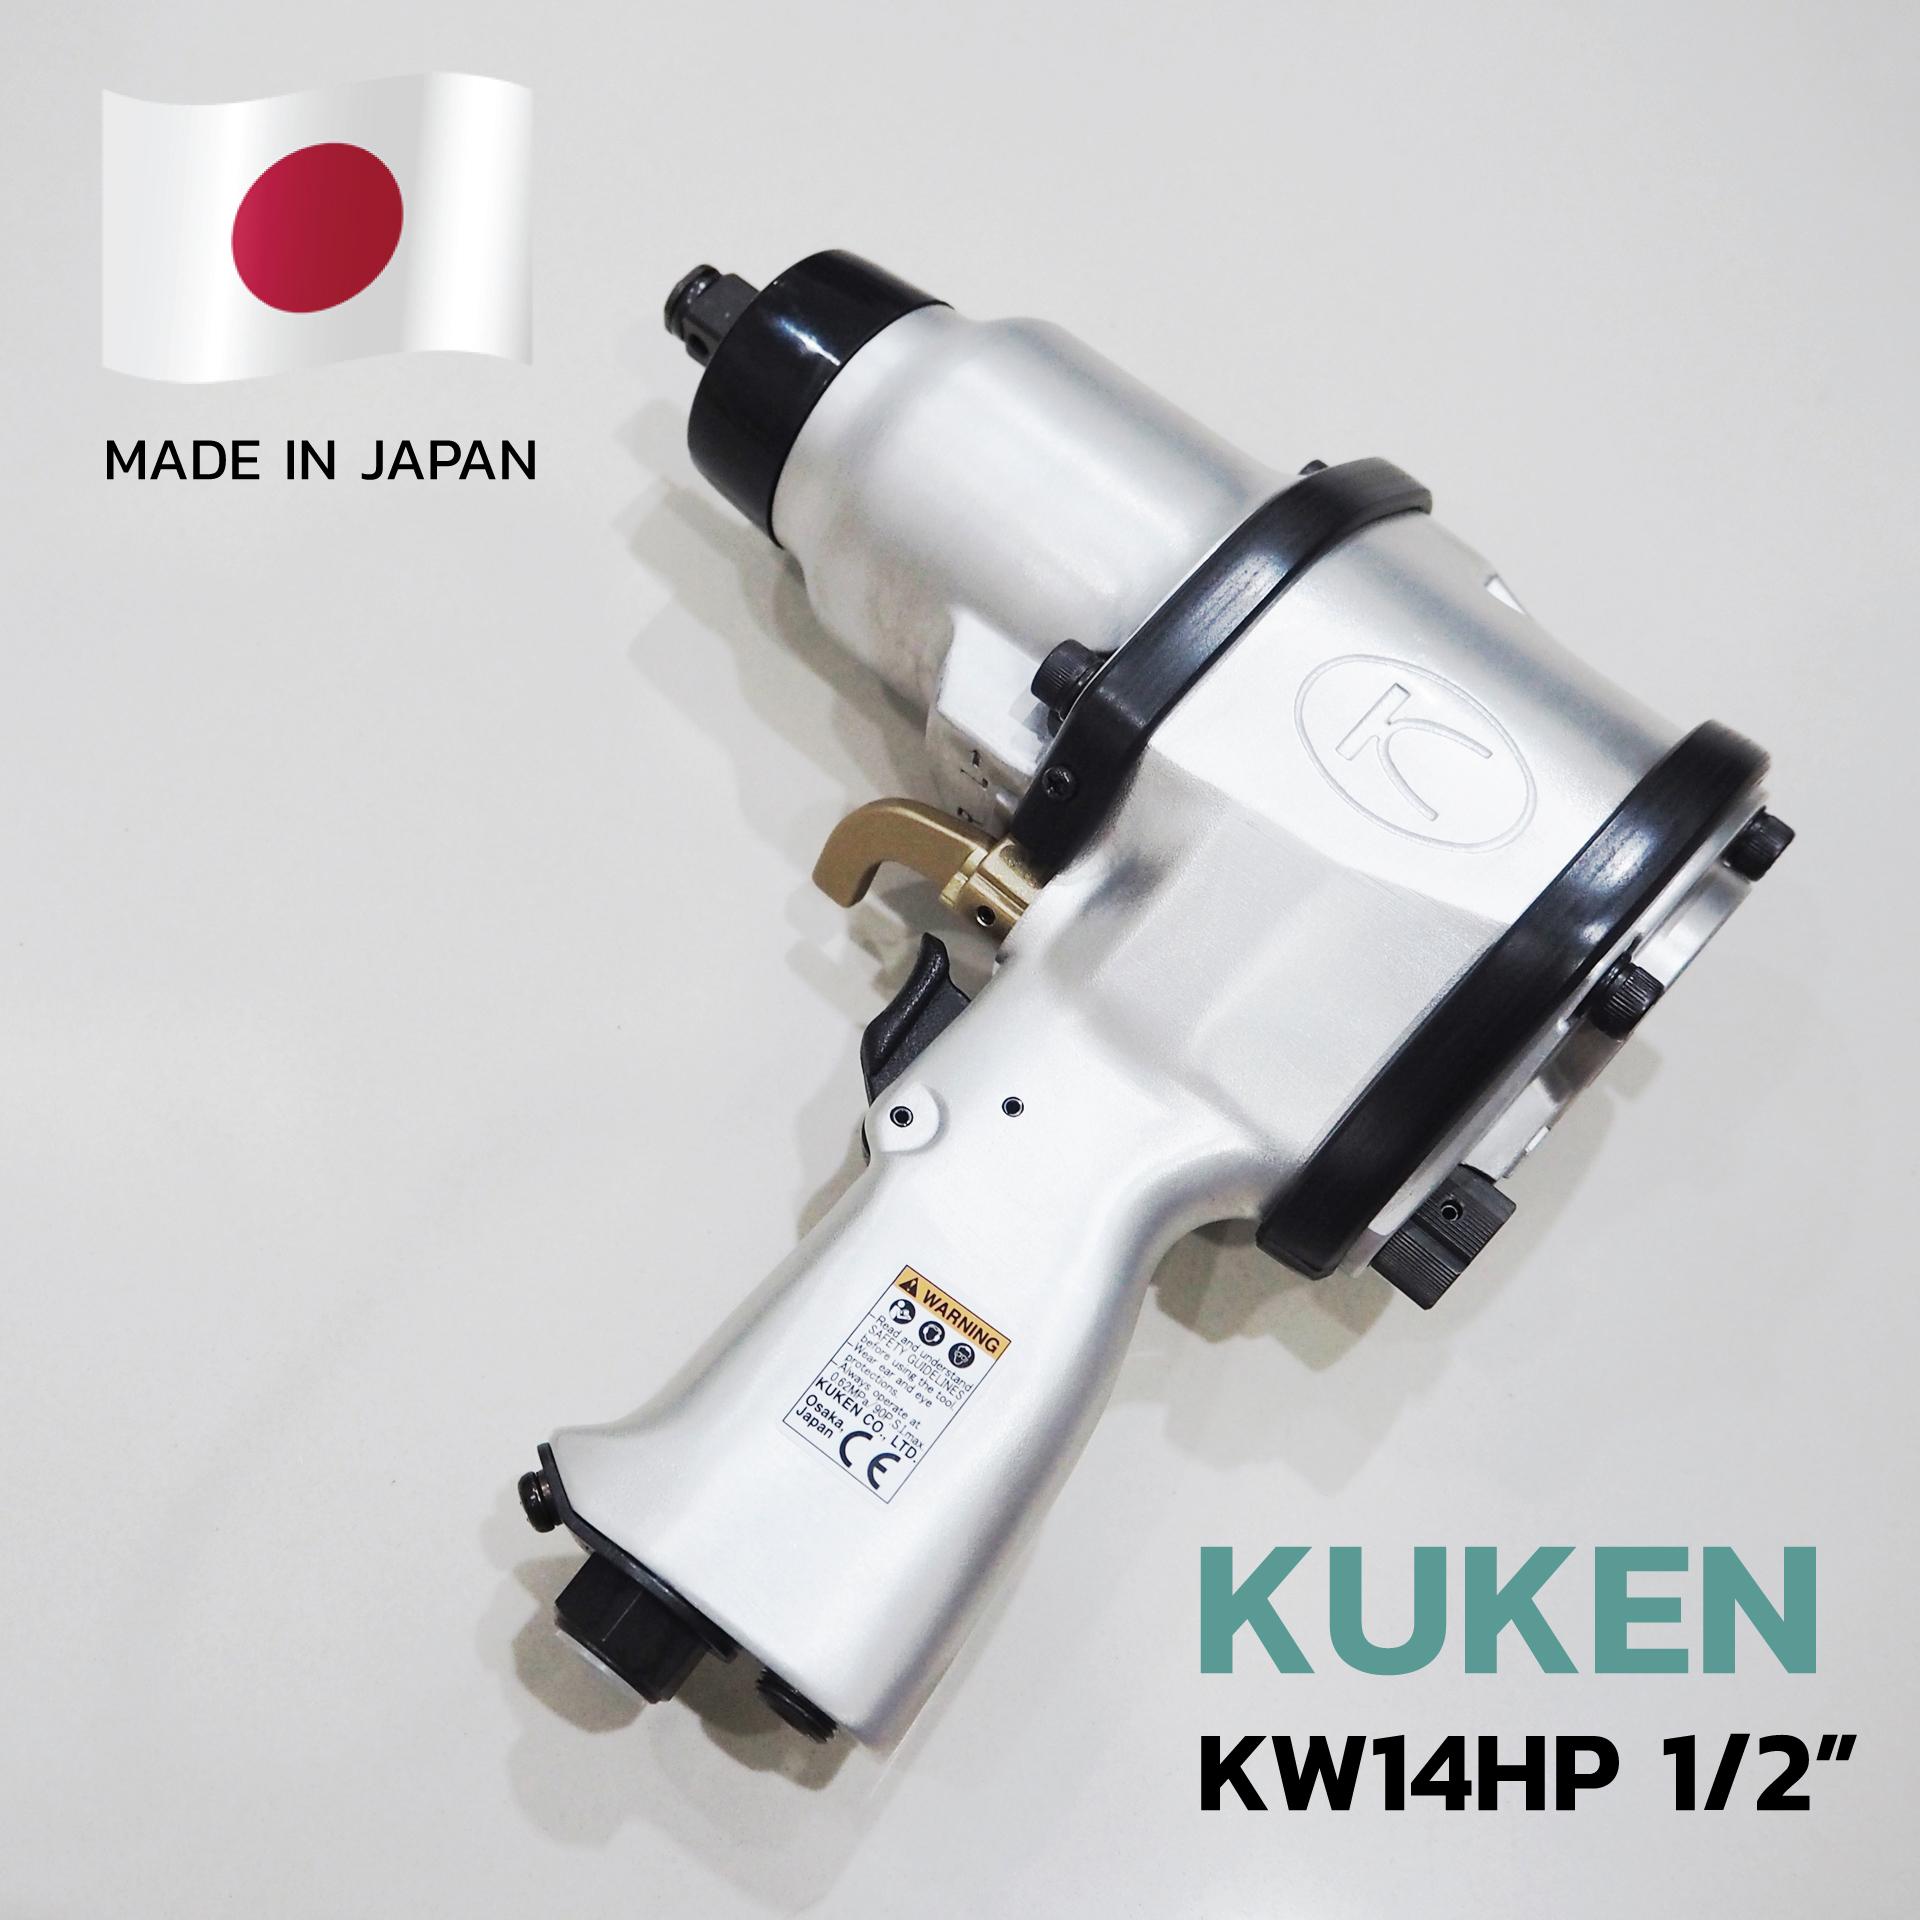 บล็อกลม KW-14HP KUKEN 1/2 impact wrench